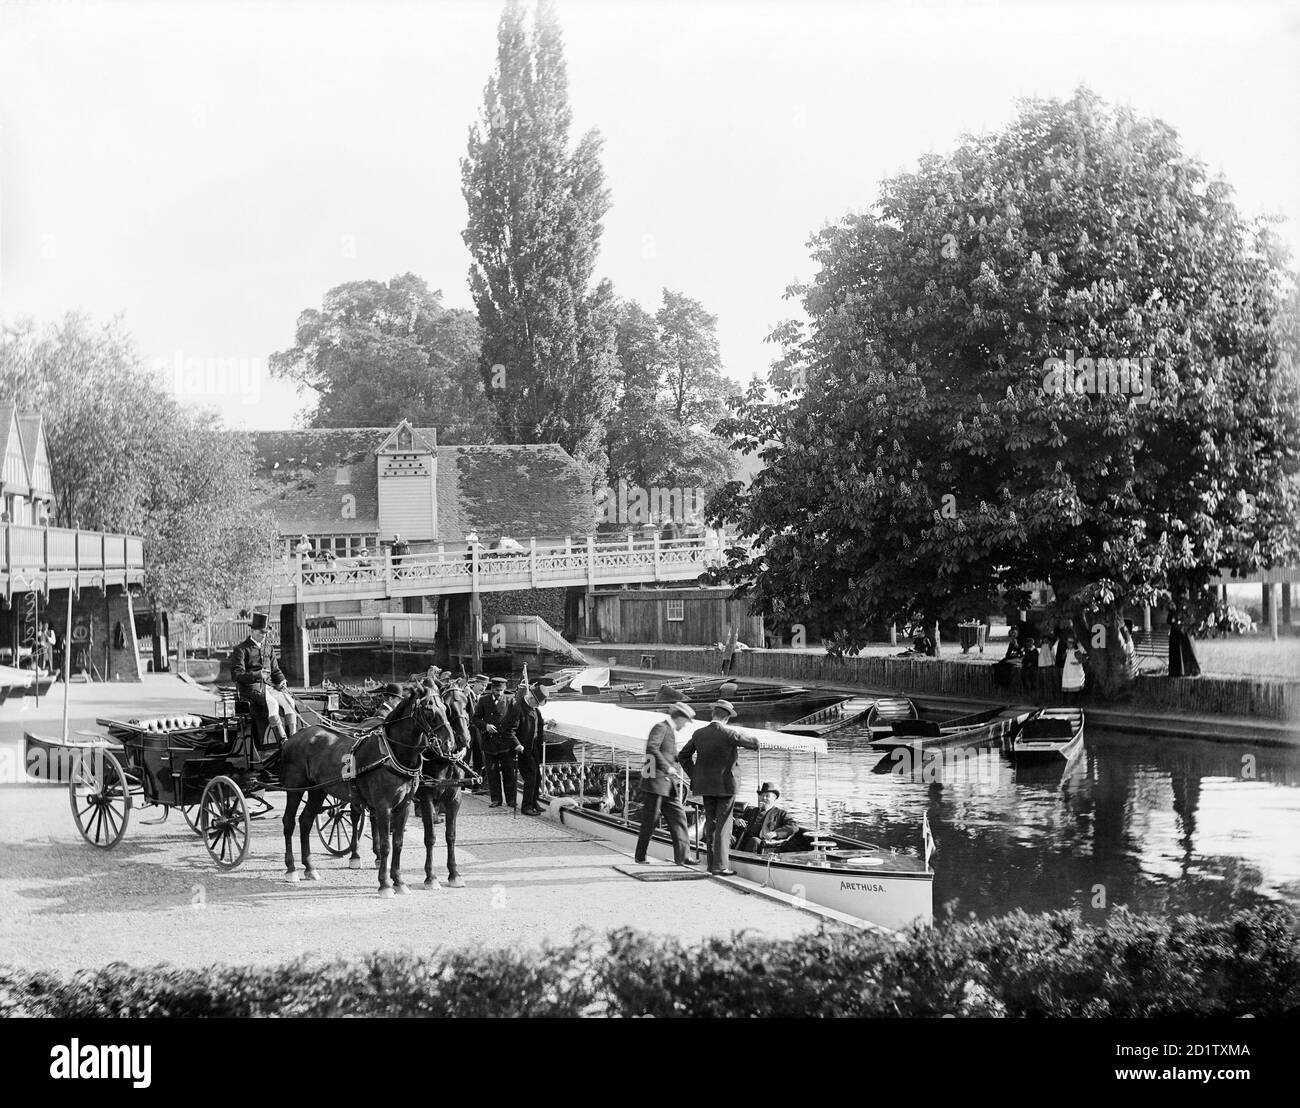 GORING, Oxfordshire. Edward, Prinz von Wales sitzt auf dem Flussschiff "Arethusa", an den Ufern der Themse, während andere Mitglieder seiner Partei Bord. Fotografiert von Henry Taunt zwischen 1860 und 1901. Stockfoto